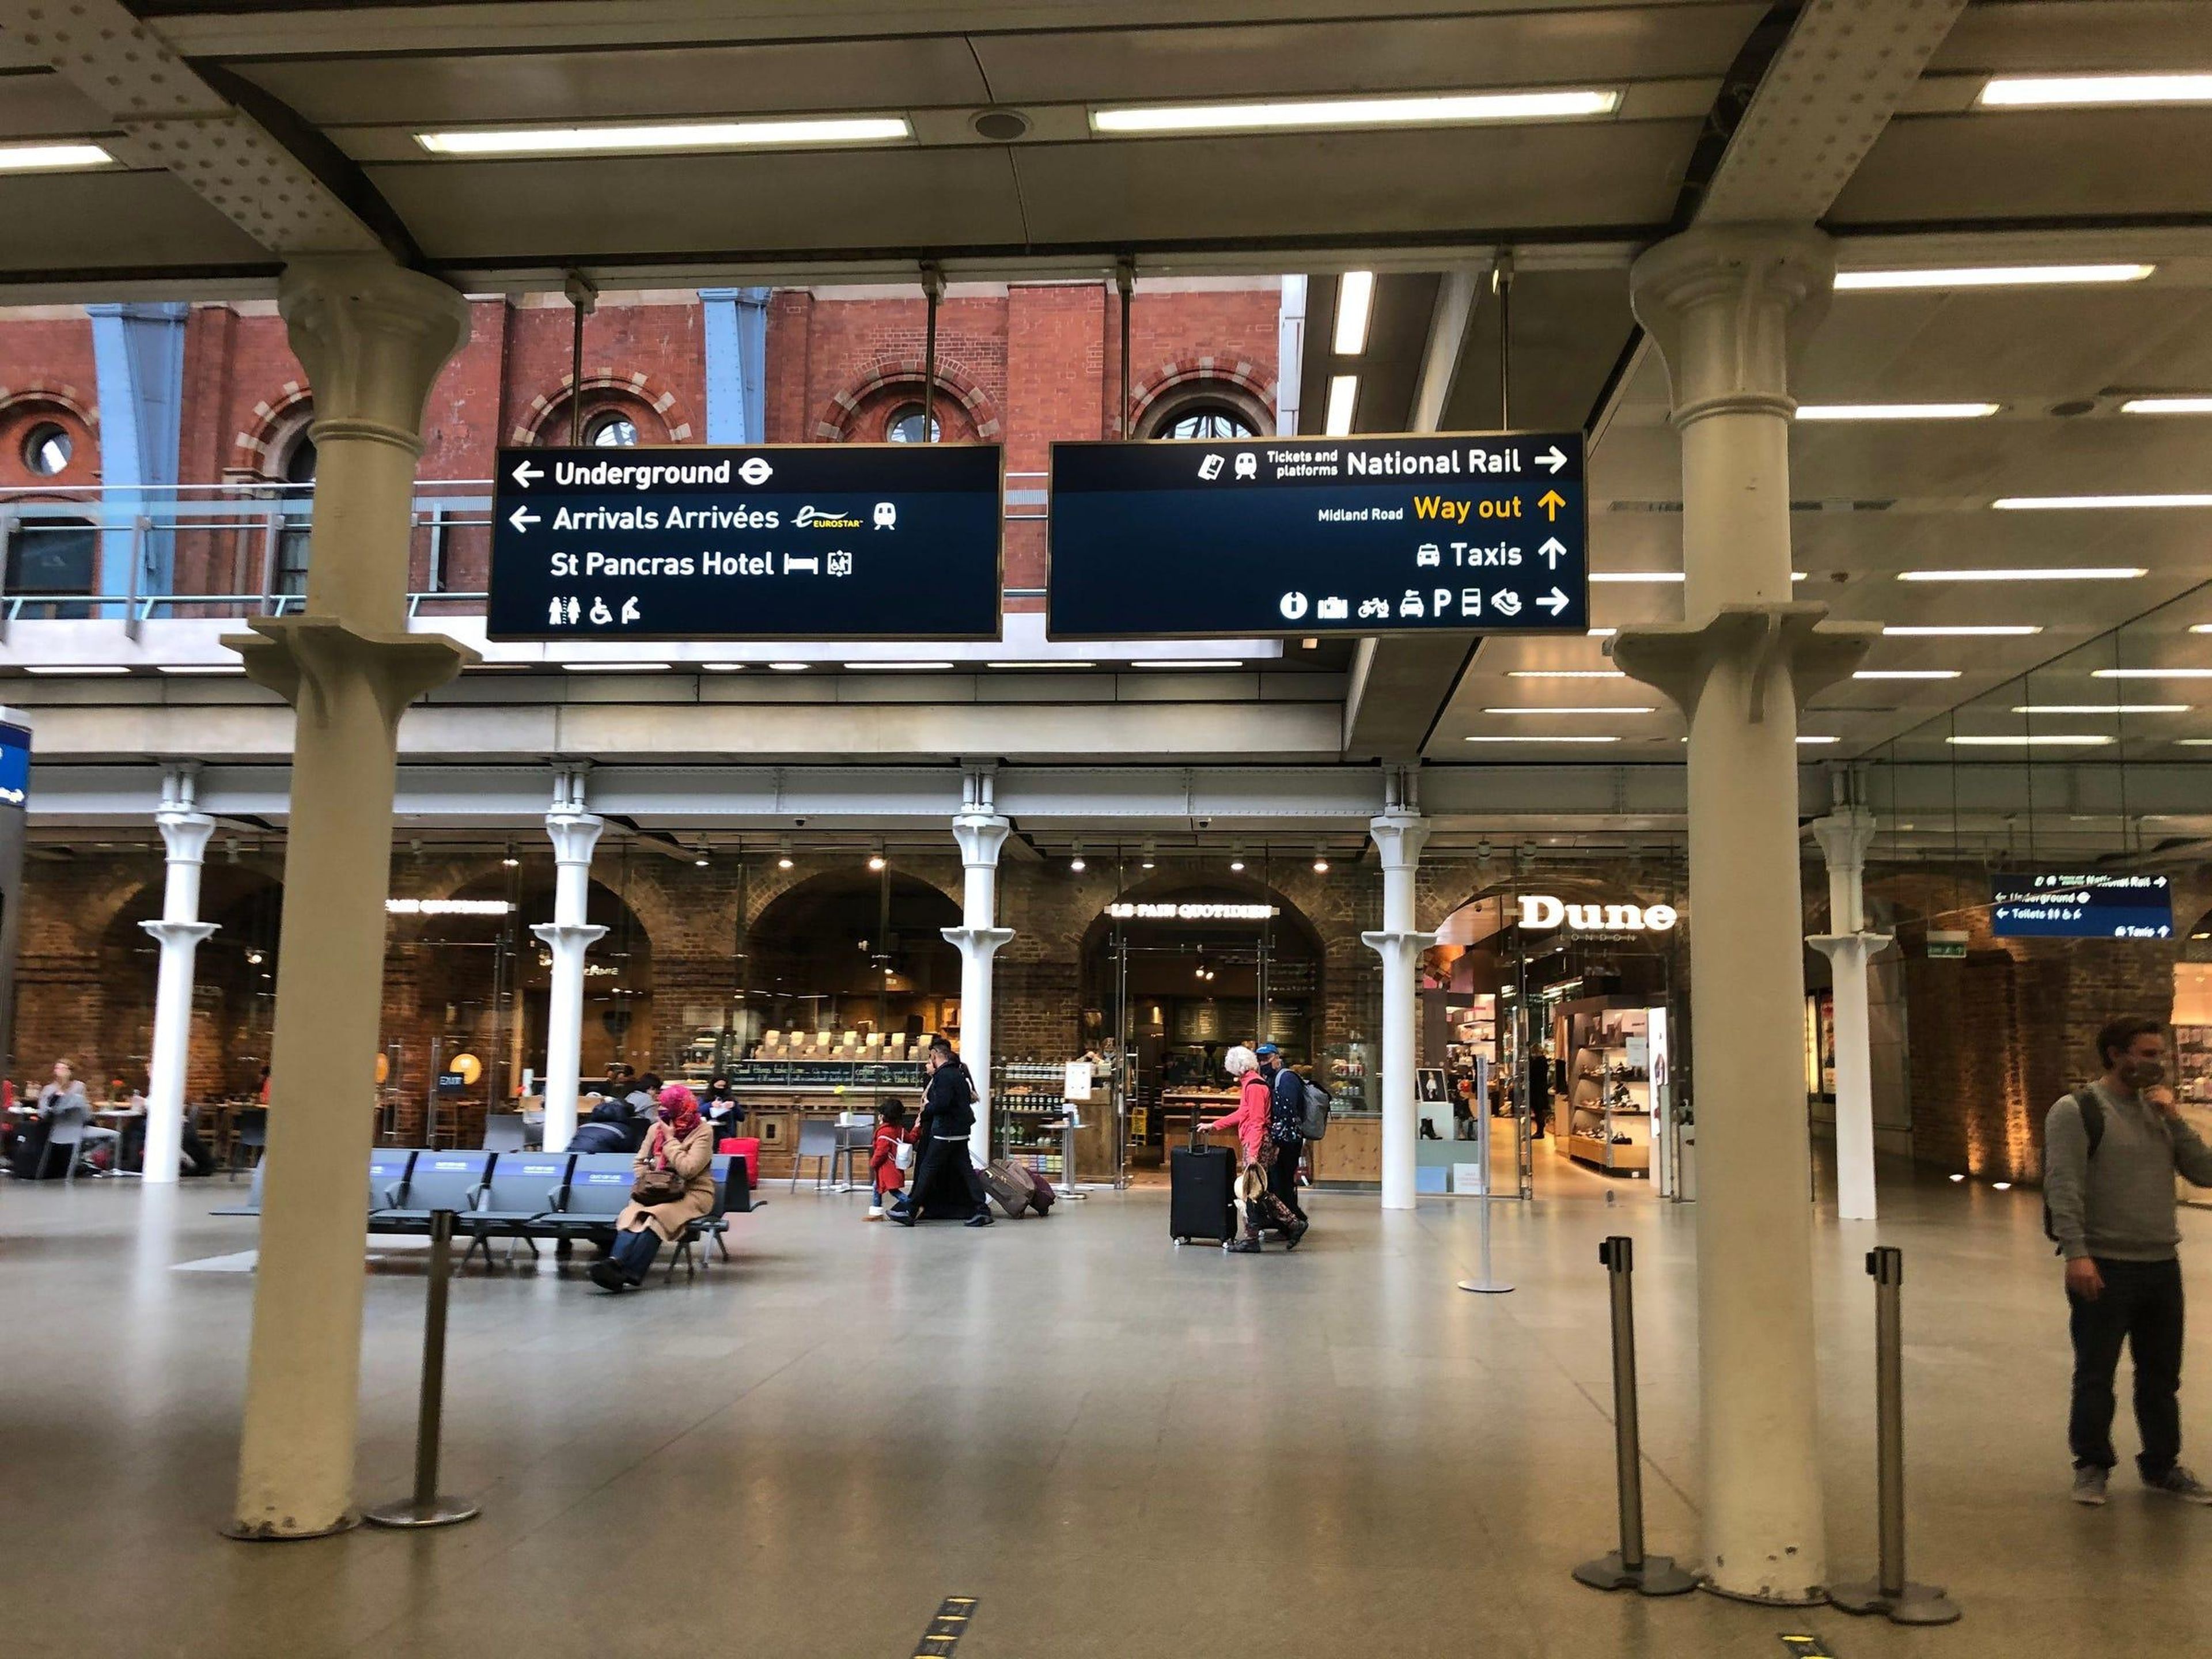 El tren sale de St. Pancras Station, en Londres.